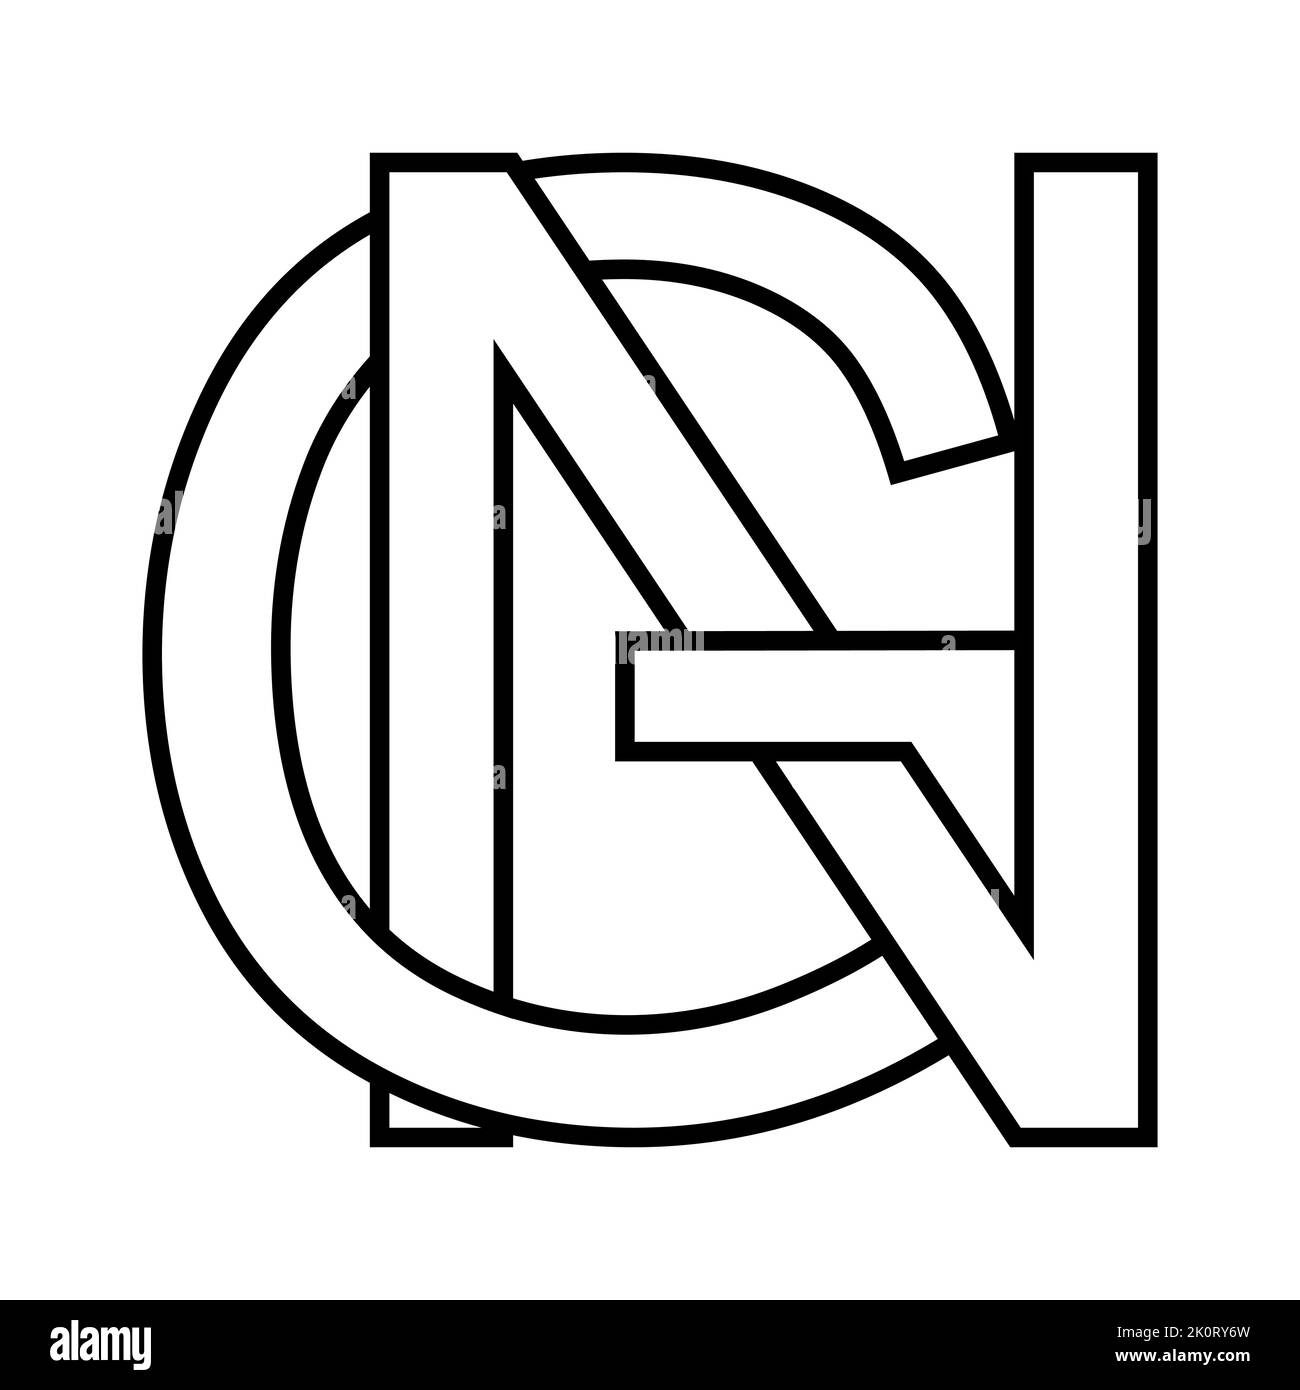 Logo signe gn ng icon, nft lettres entrelacées g n Illustration de Vecteur